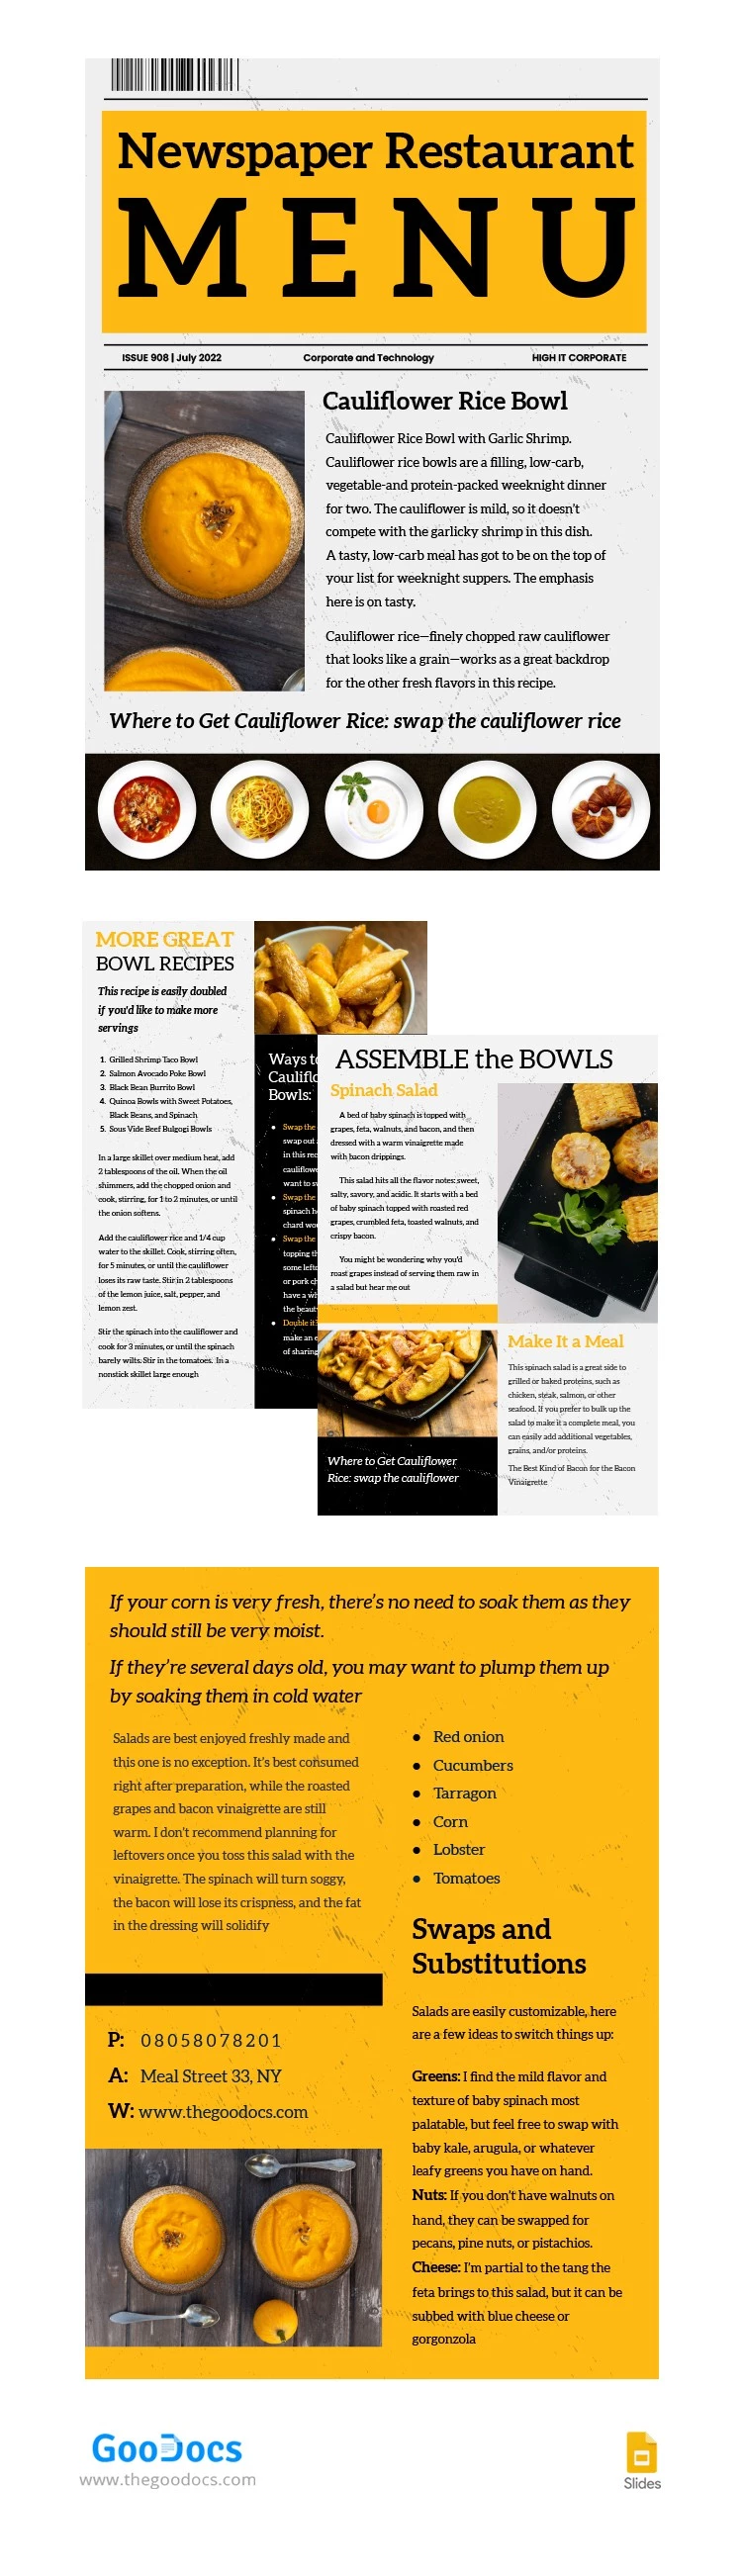 Menu du restaurant Yellow Journal - free Google Docs Template - 10064310